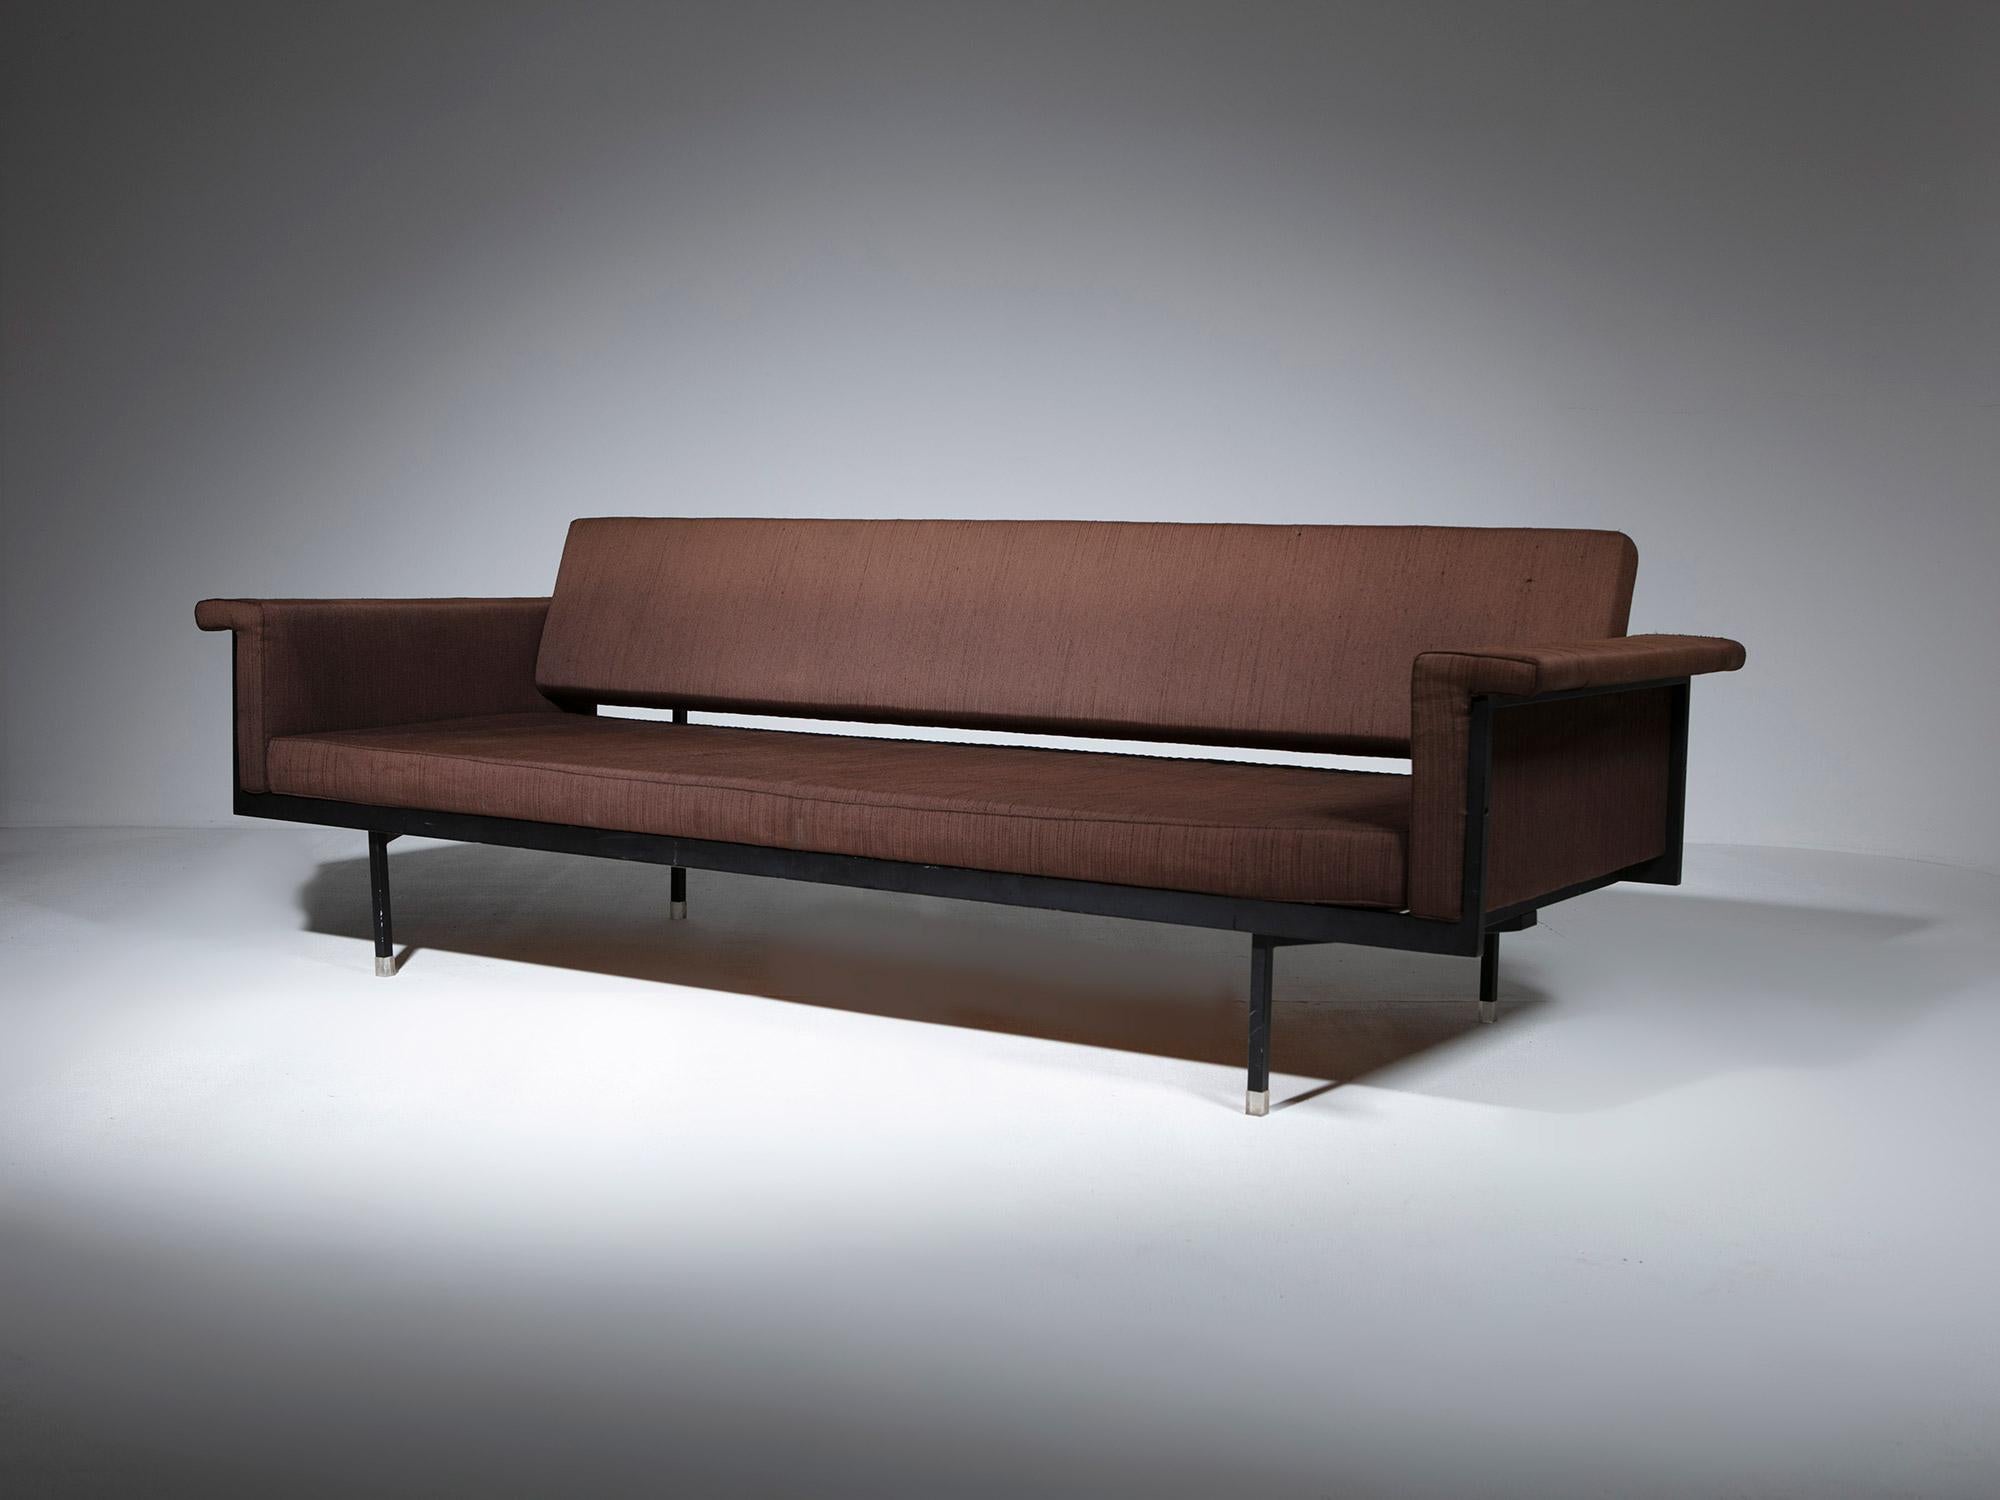 Tagesbett Naeko von Kazuhide Takahama für Gavina.
Frühe Ausführung mit Metallgestell, Plexiglasfüßen und Drehmechanismus der Rückenlehne, der es ermöglicht, das Sofa als Einzelbett in Standardgröße zu verwenden.
Geradlinige, minimale Formen, die